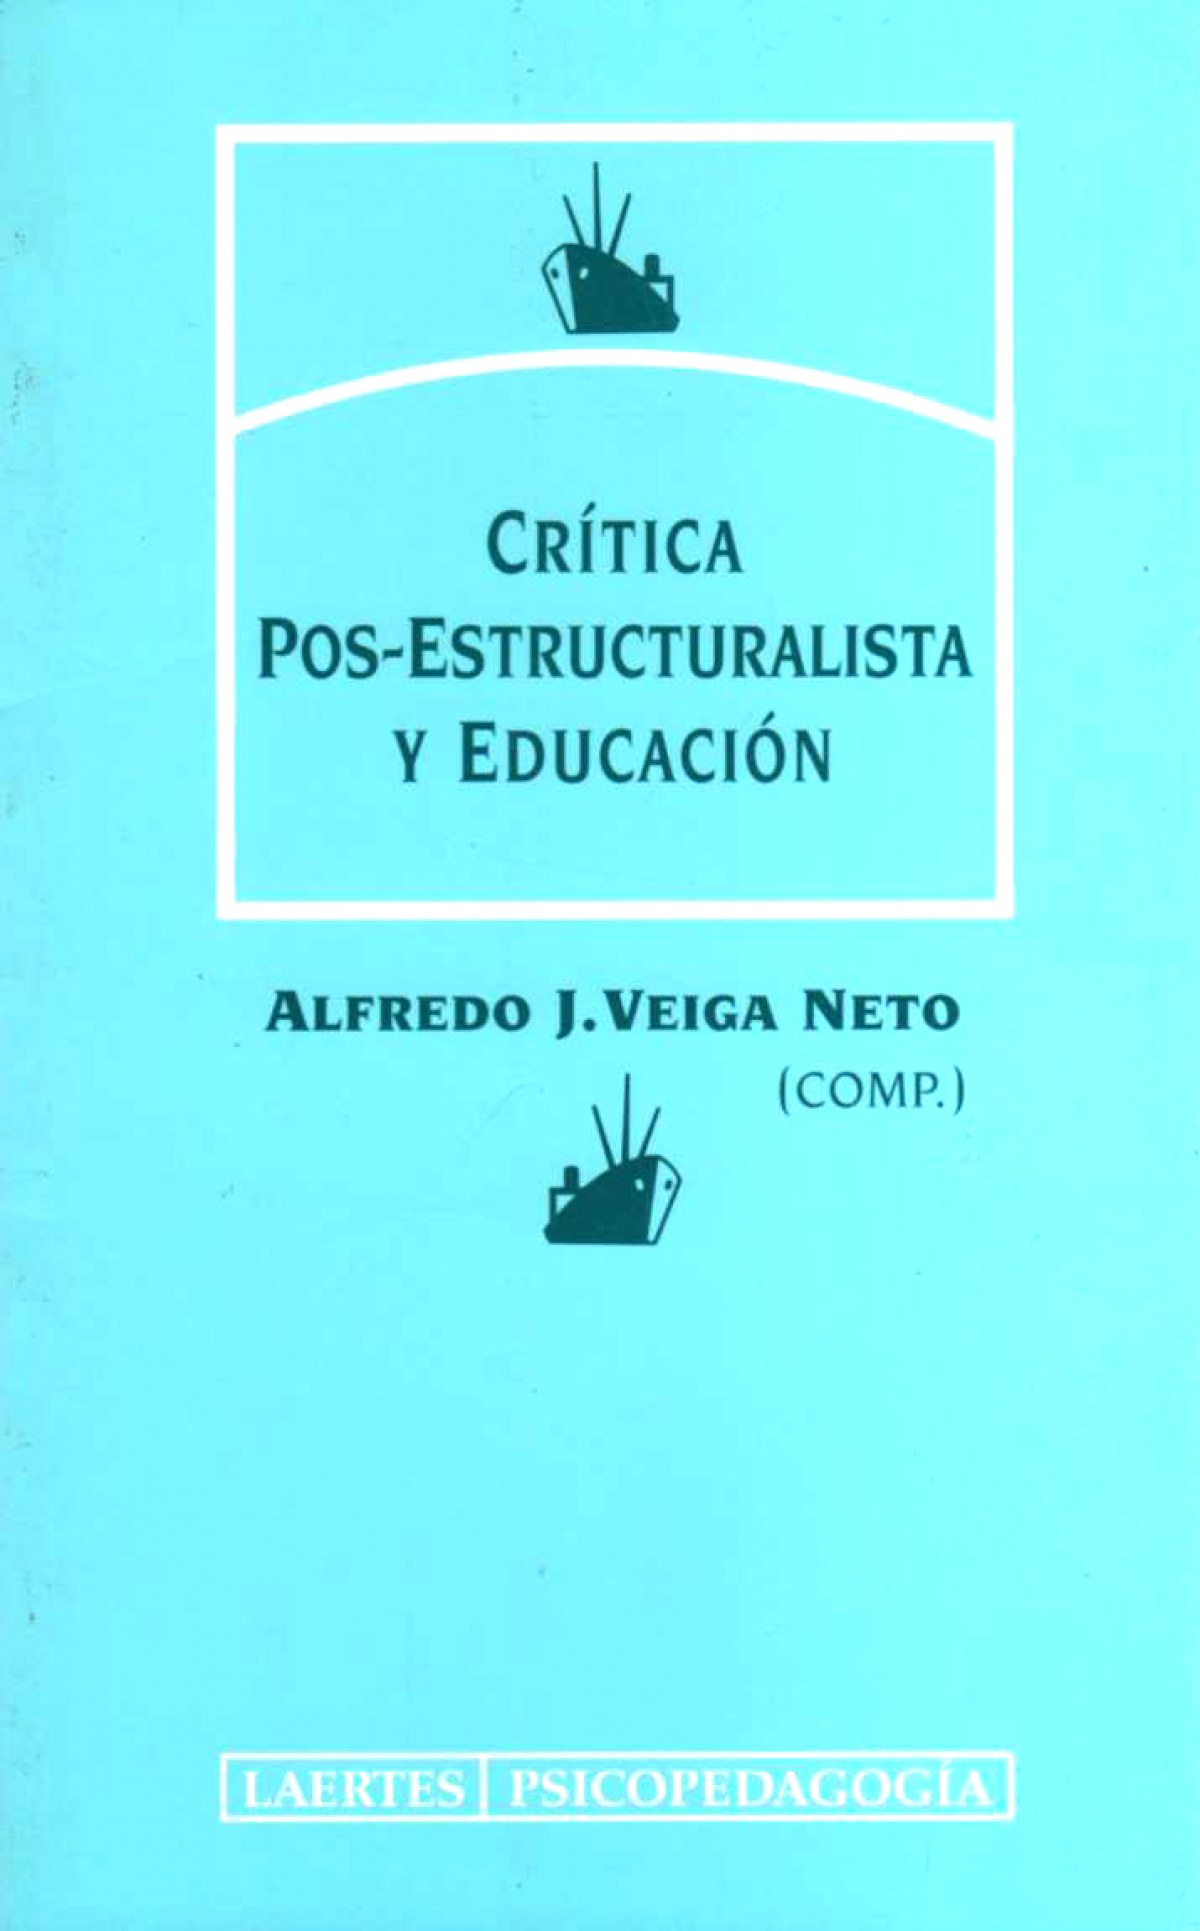 Critica pos-estructuralista y educacion - Veiga Nieto, Alfredo J.